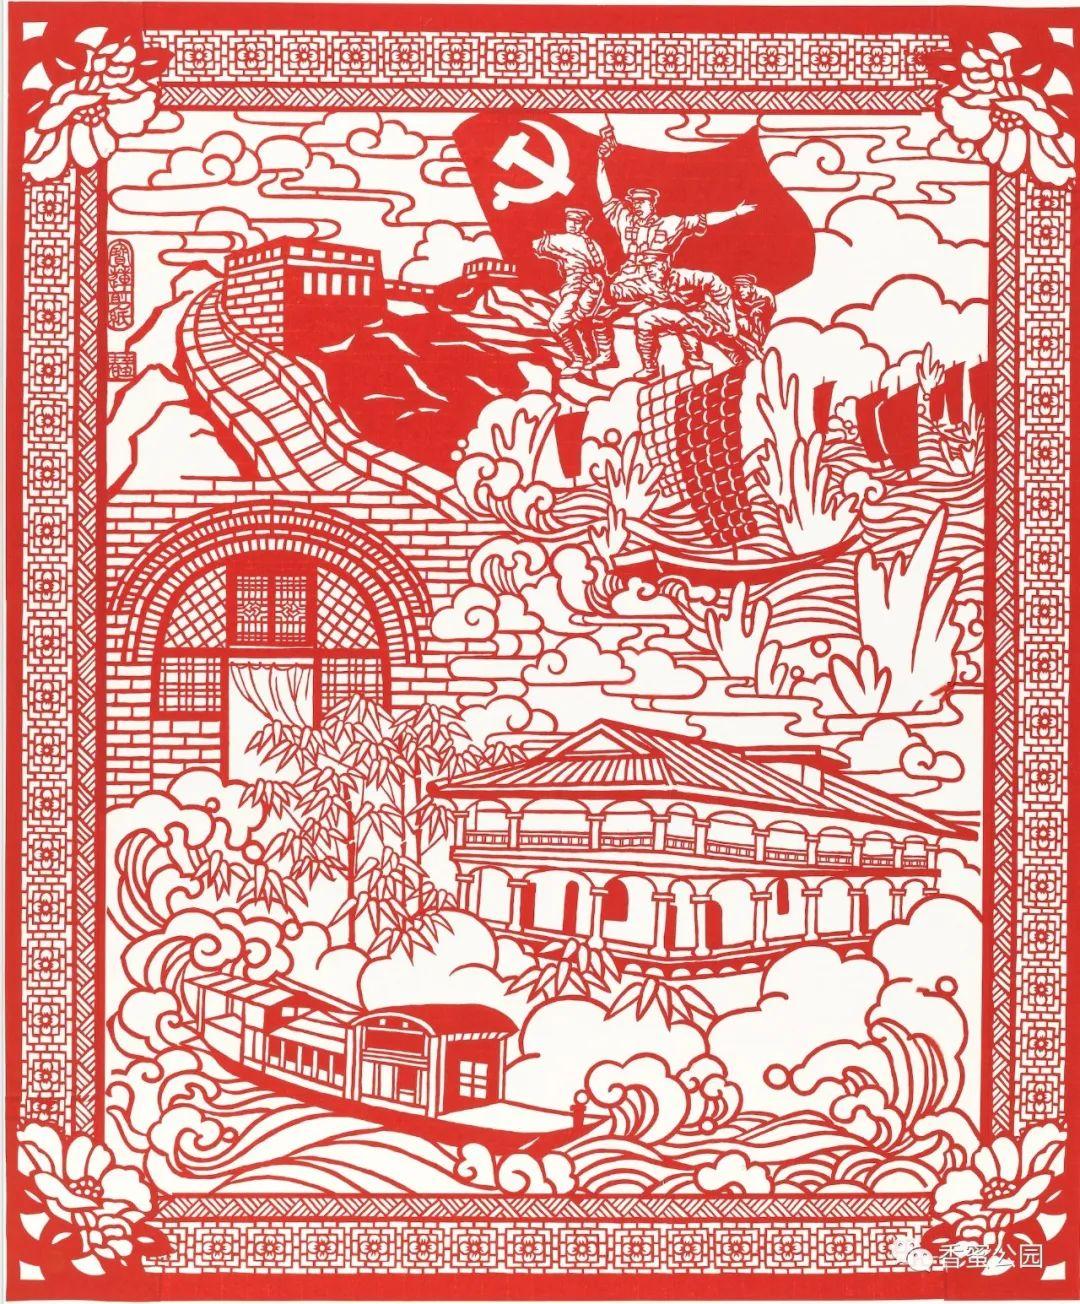 红色印迹——香蜜公园庆祝建党100周年篆刻印文艺术展